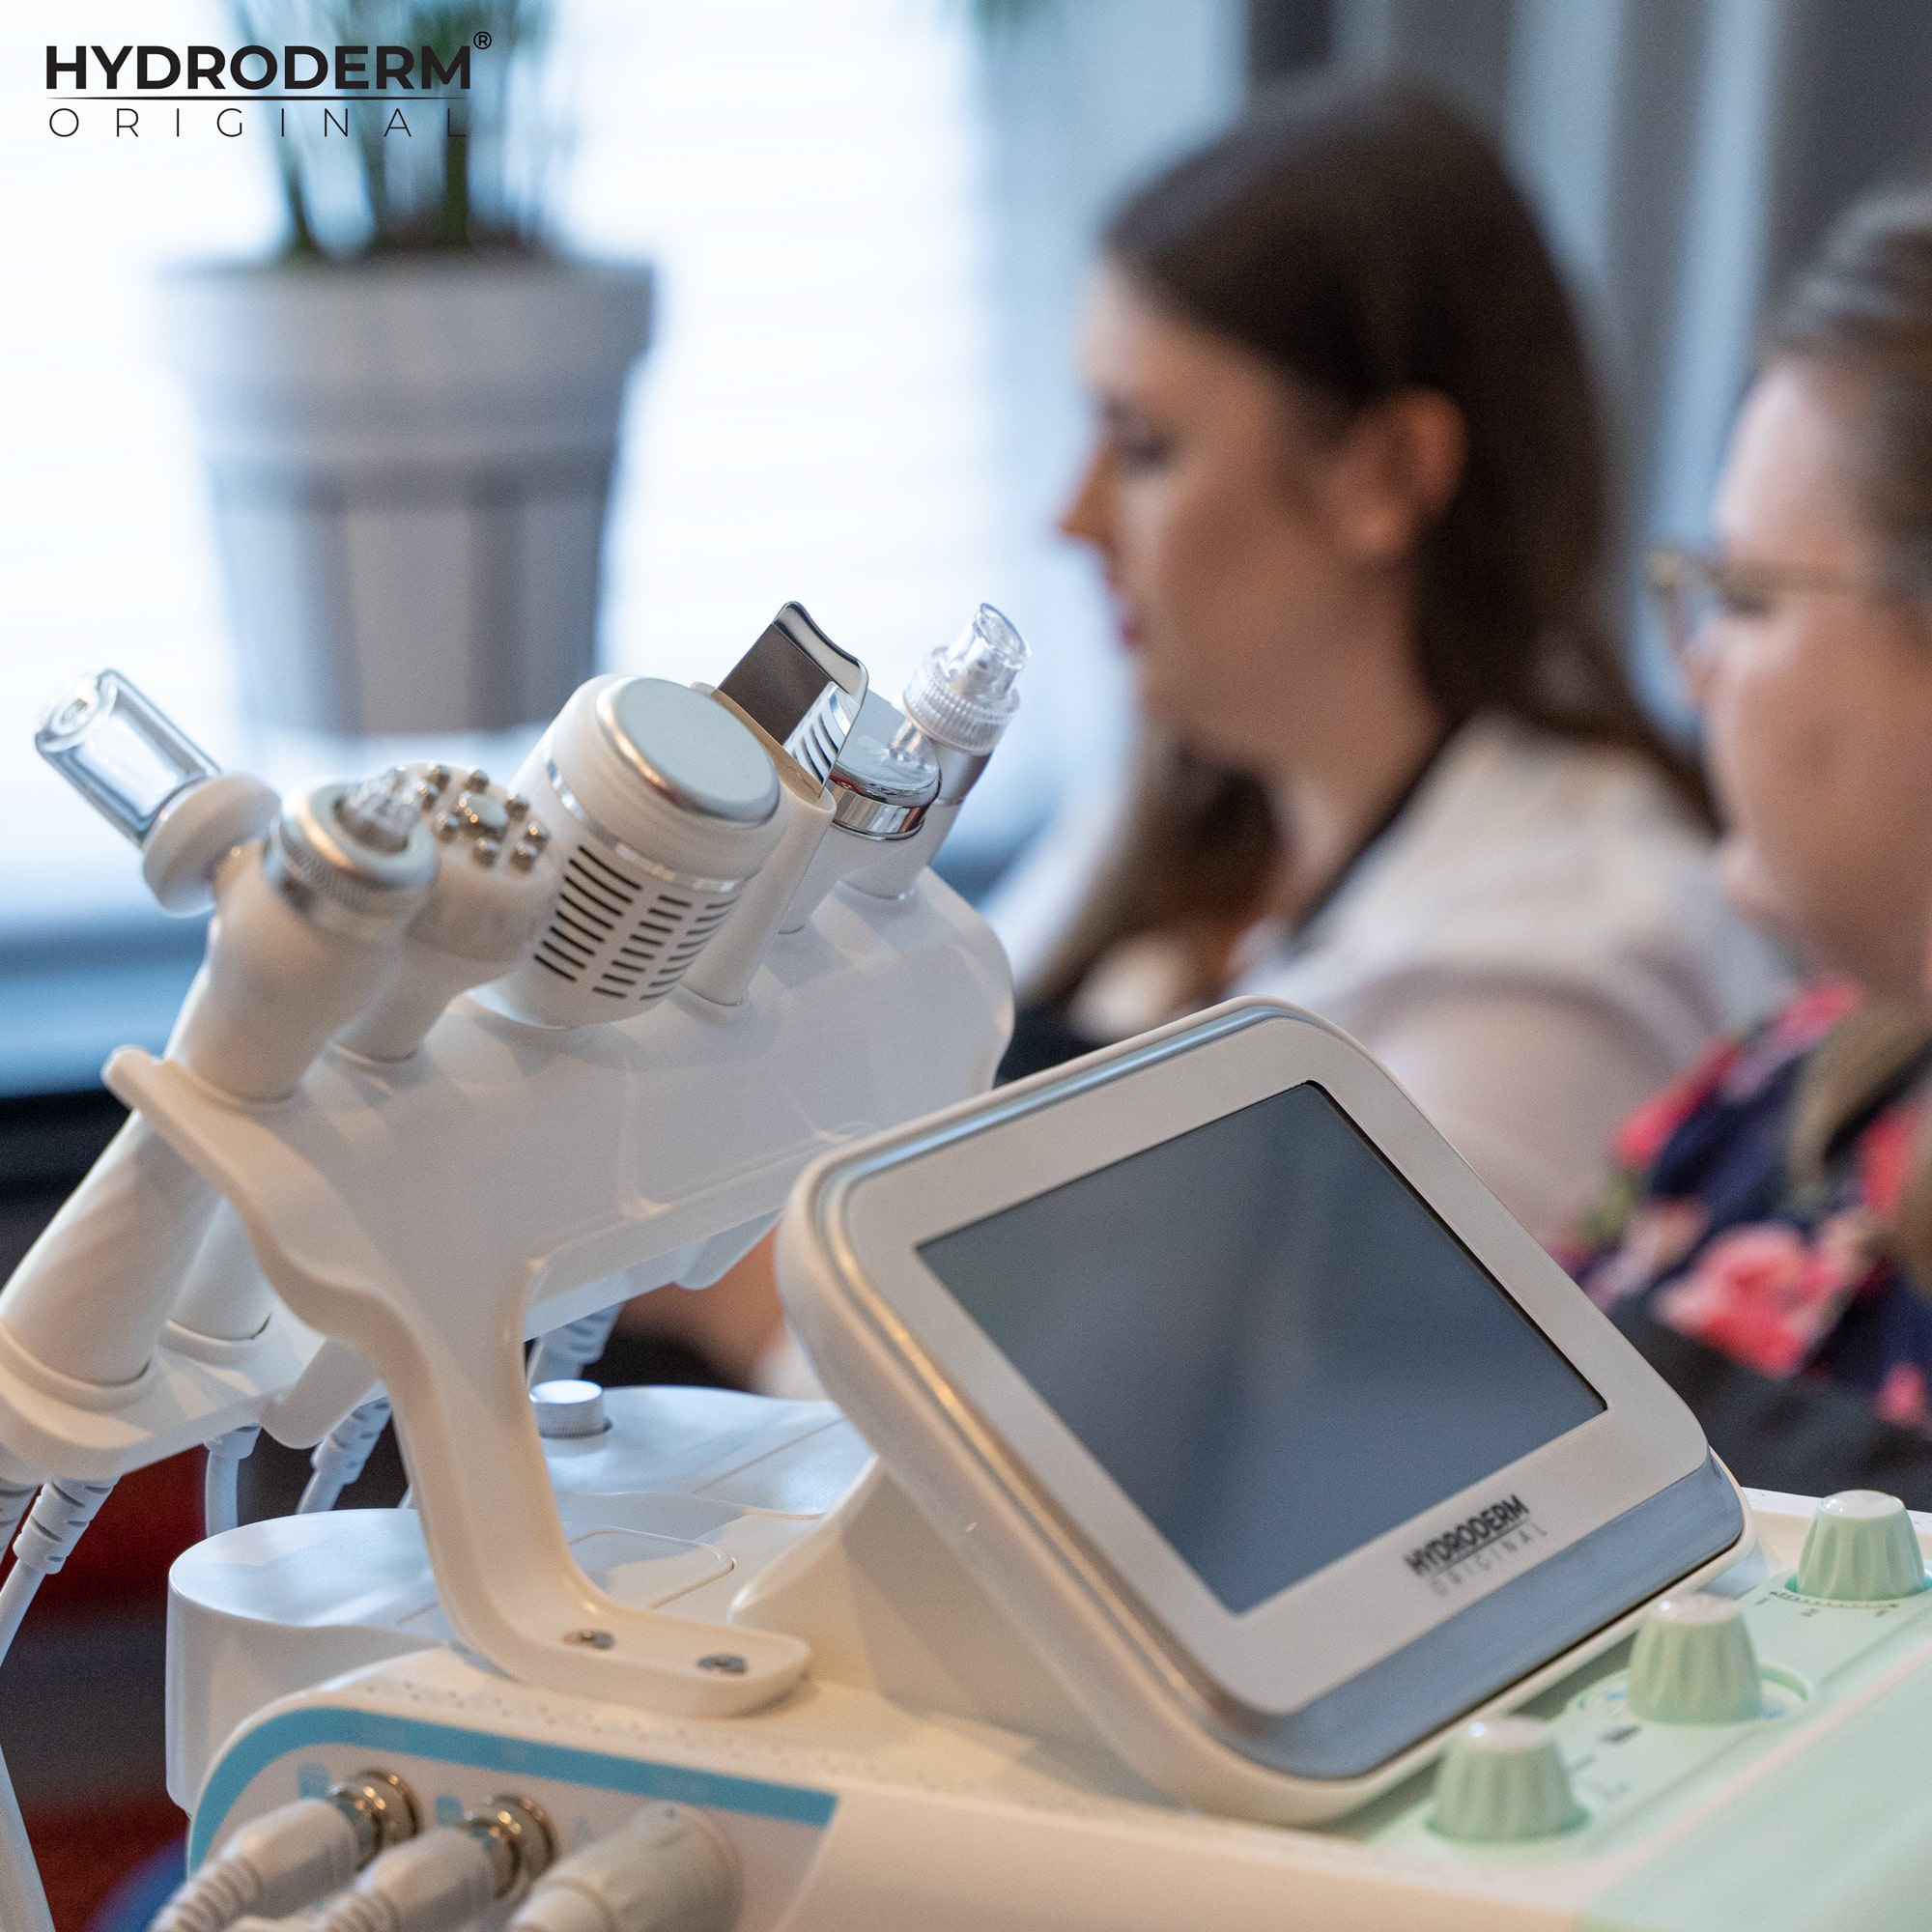 Kosmetolog tłumaczy jakie procedury są dostępne w ramach urządzenia Hydroderm